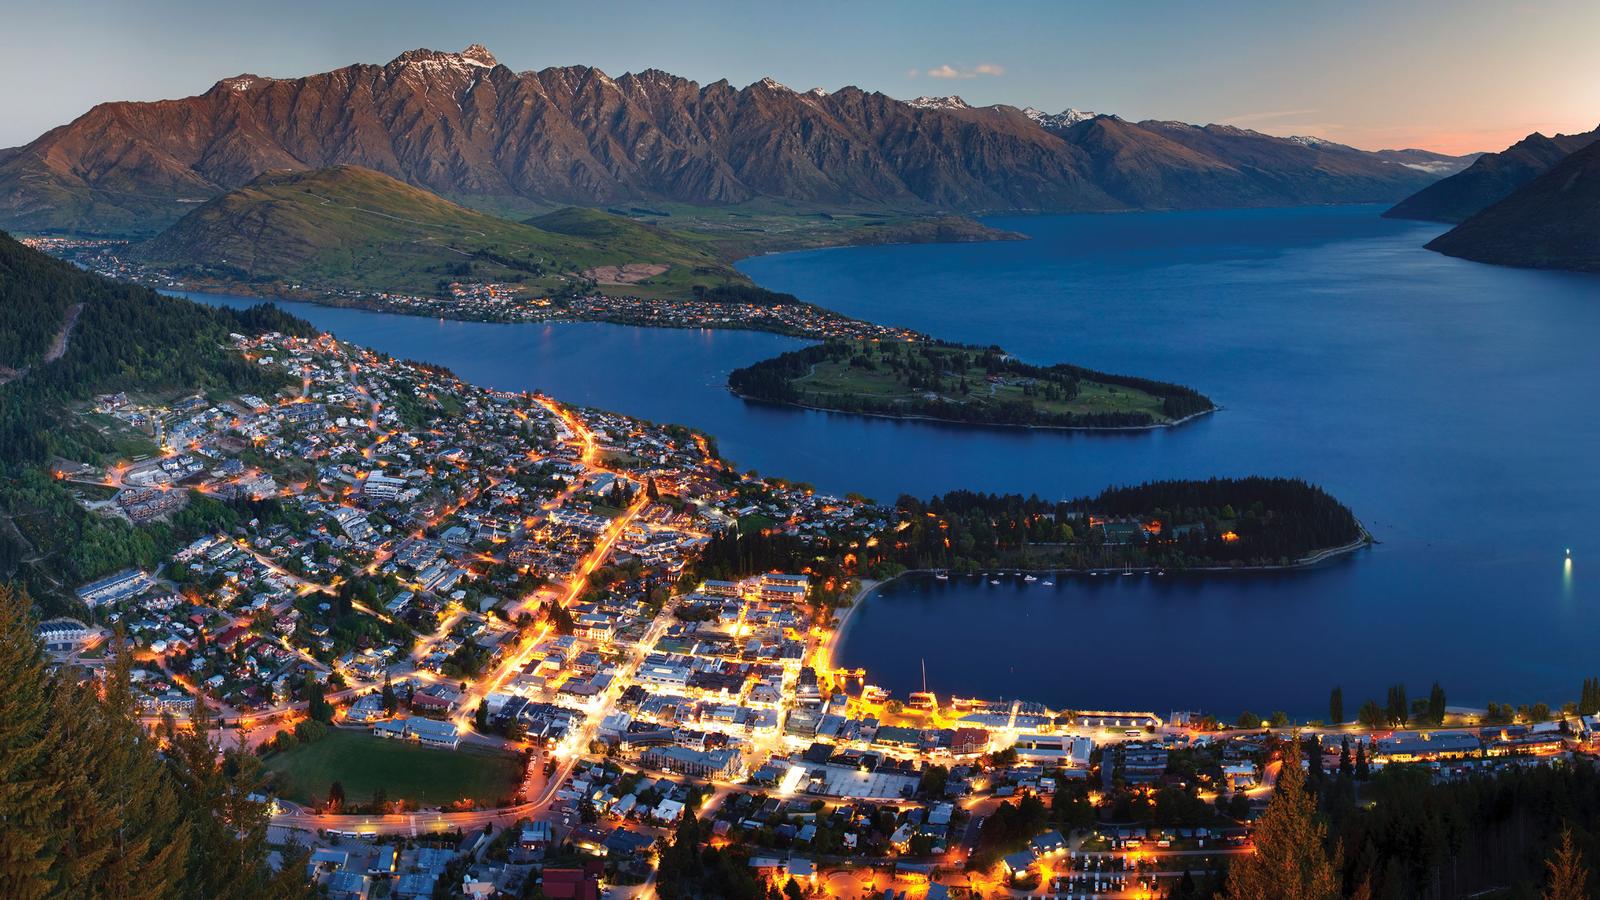 Chuyển phát nhanh đi New Zealand giá rẻ uy tín cùng NoiBai Express